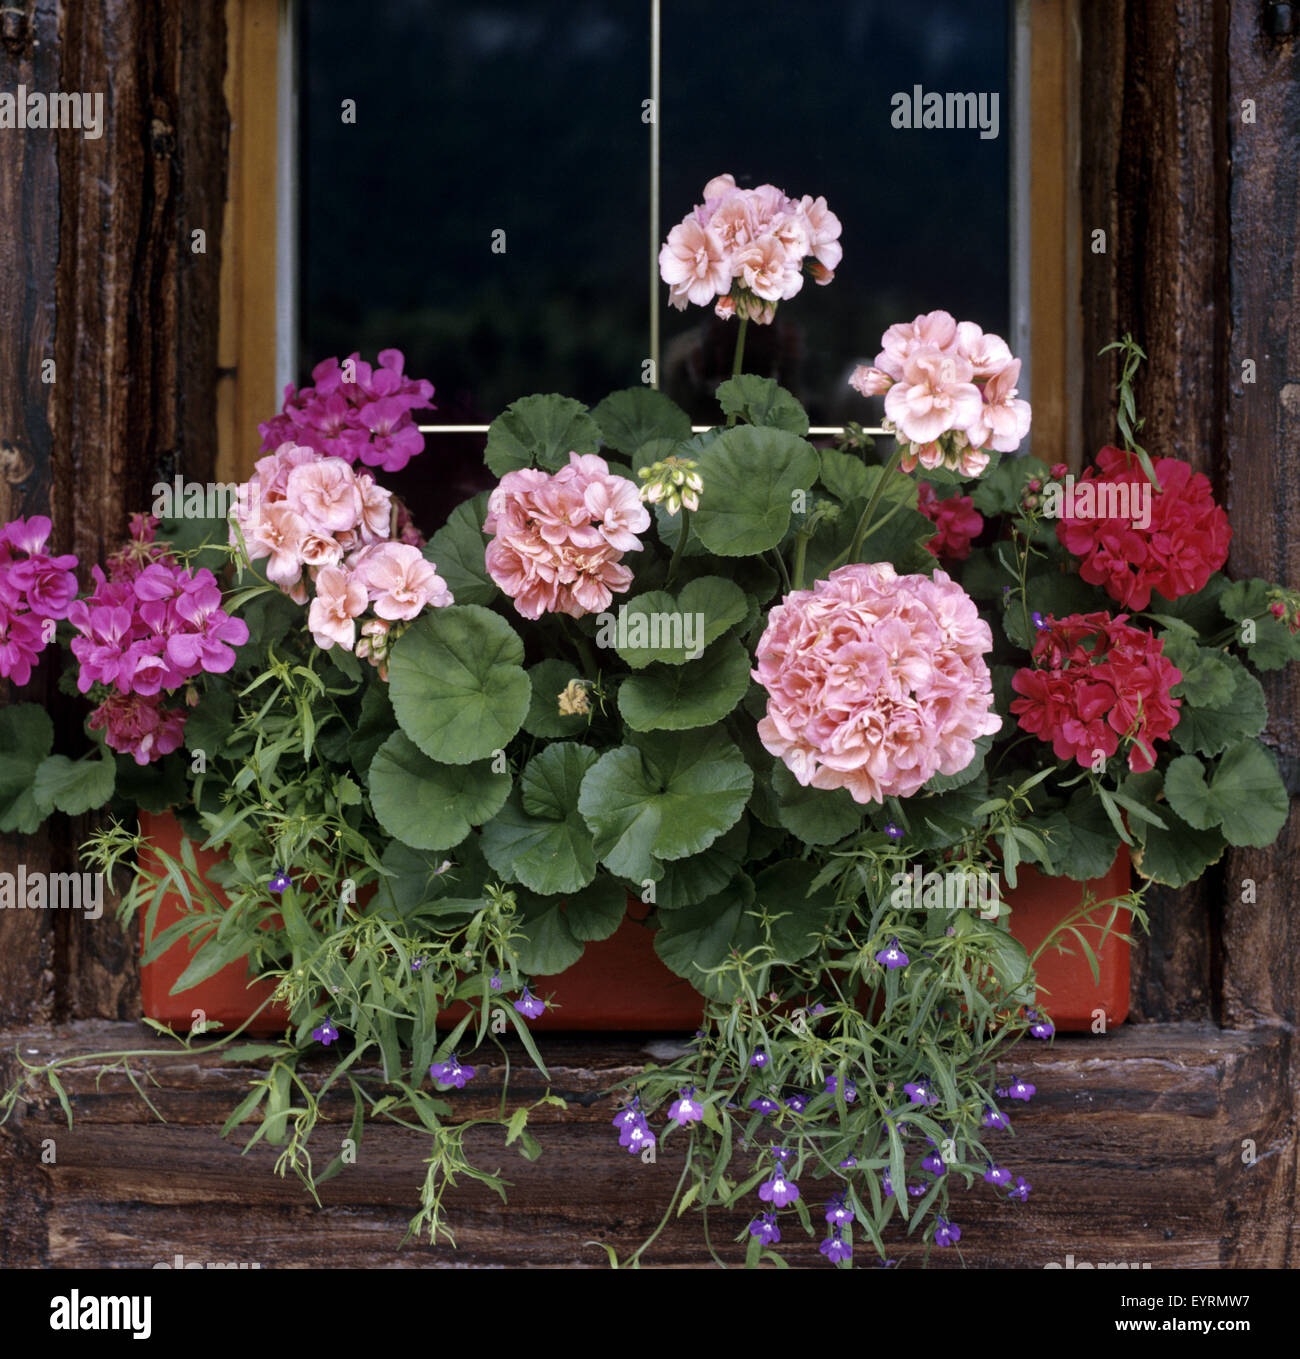 Blumenfenster, Fenster mit Blumen, Balkonblumen, Blumen auf Terrasse, Gartenblumen, Kübelpflanzen, Geranien Banque D'Images